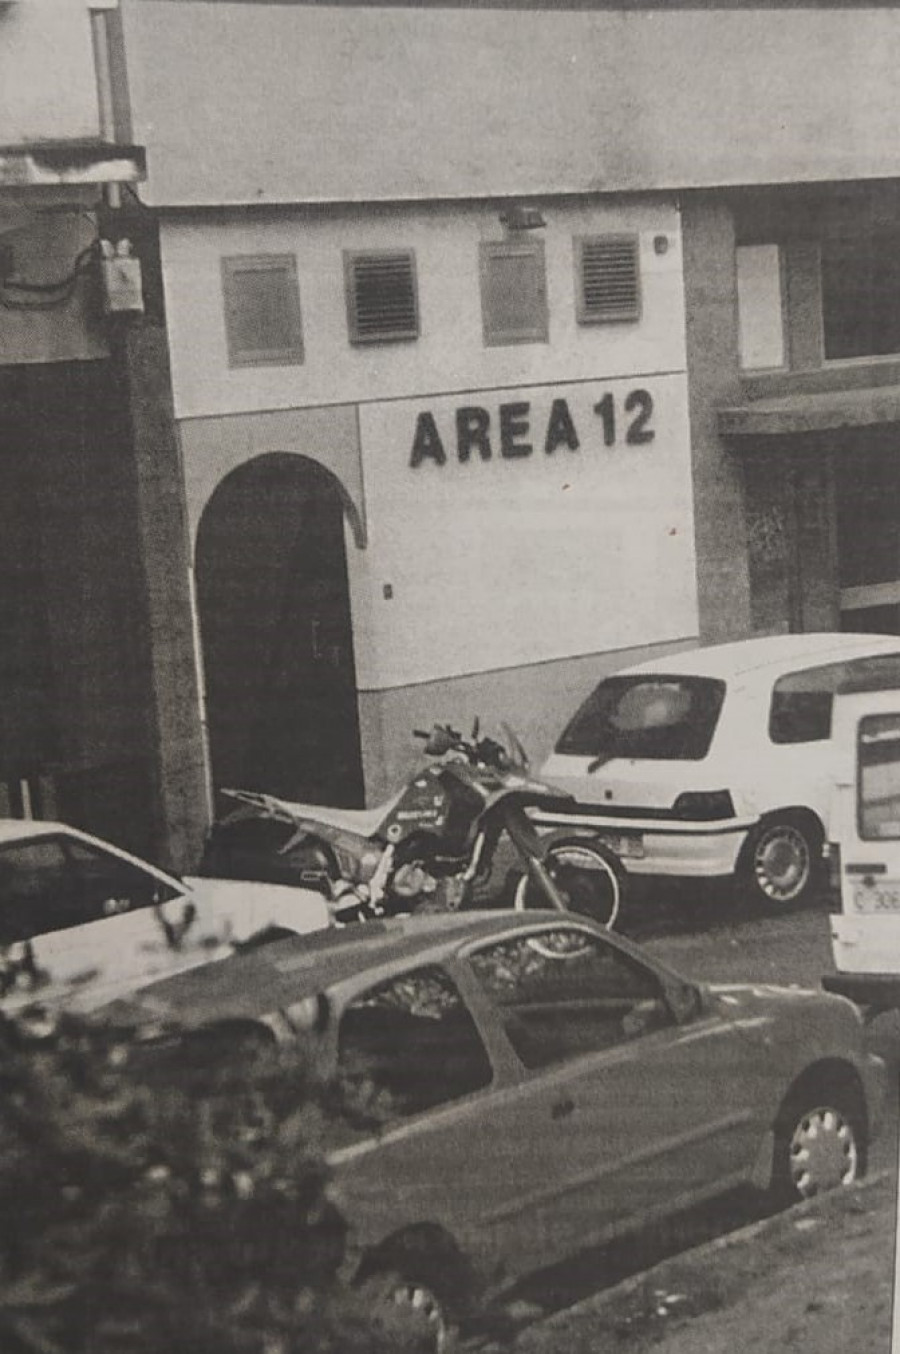 Hace 25 años: La mayor operación antidroga en A Coruña y dos fallecidos en Curtis en un accidente